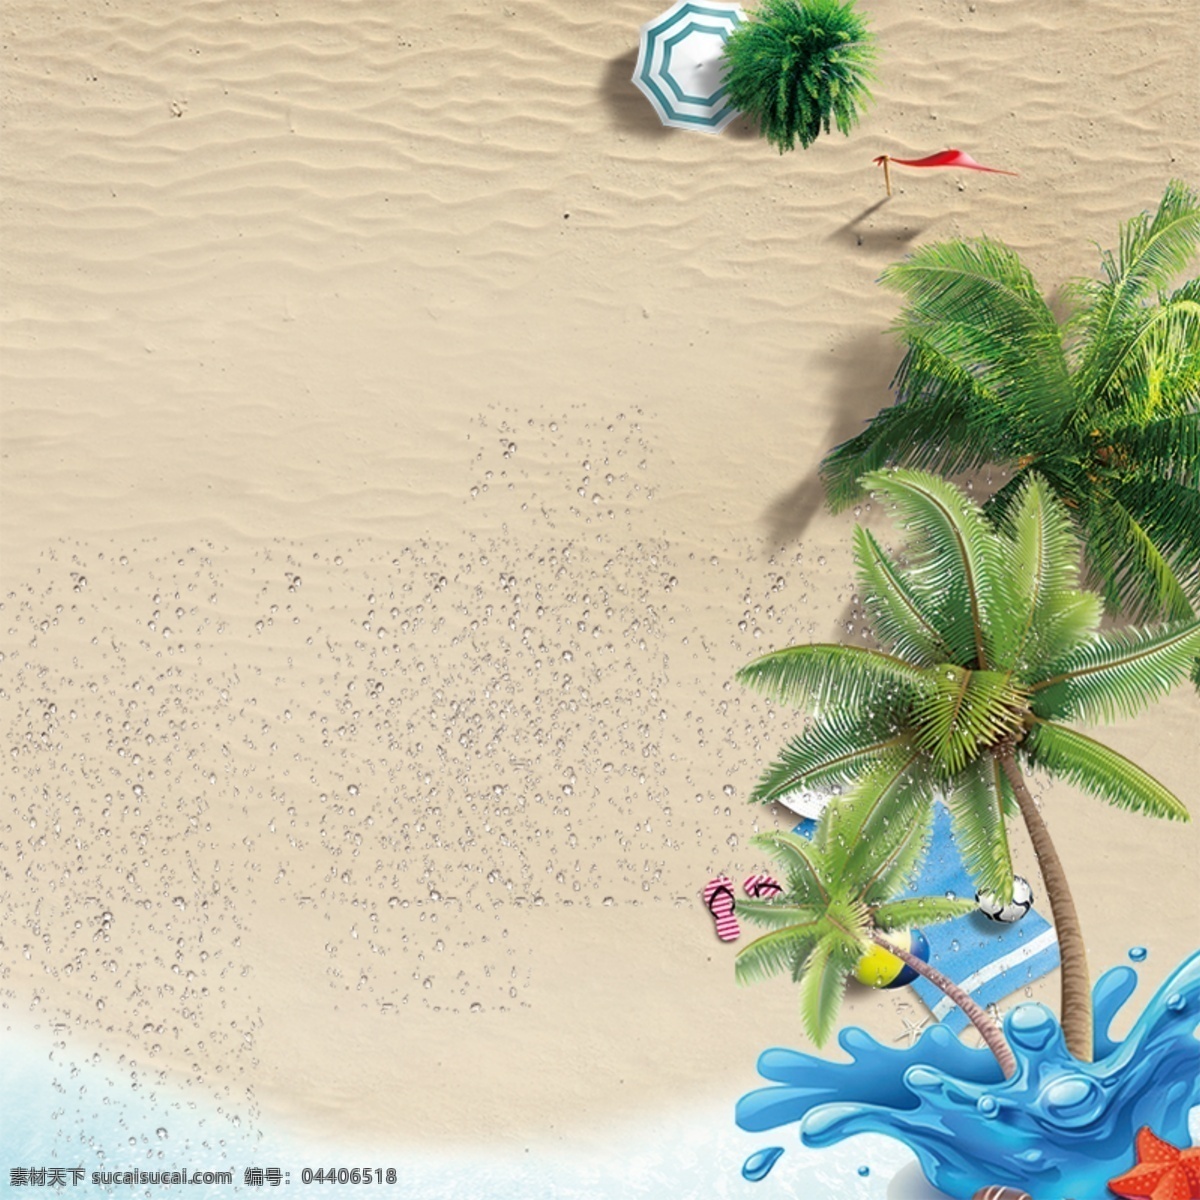 背景 大海 广告设计模板 蓝天 平面设计 沙滩 淘宝 夏日 模板下载 夏日沙滩背景 椰子树 海报 黄色